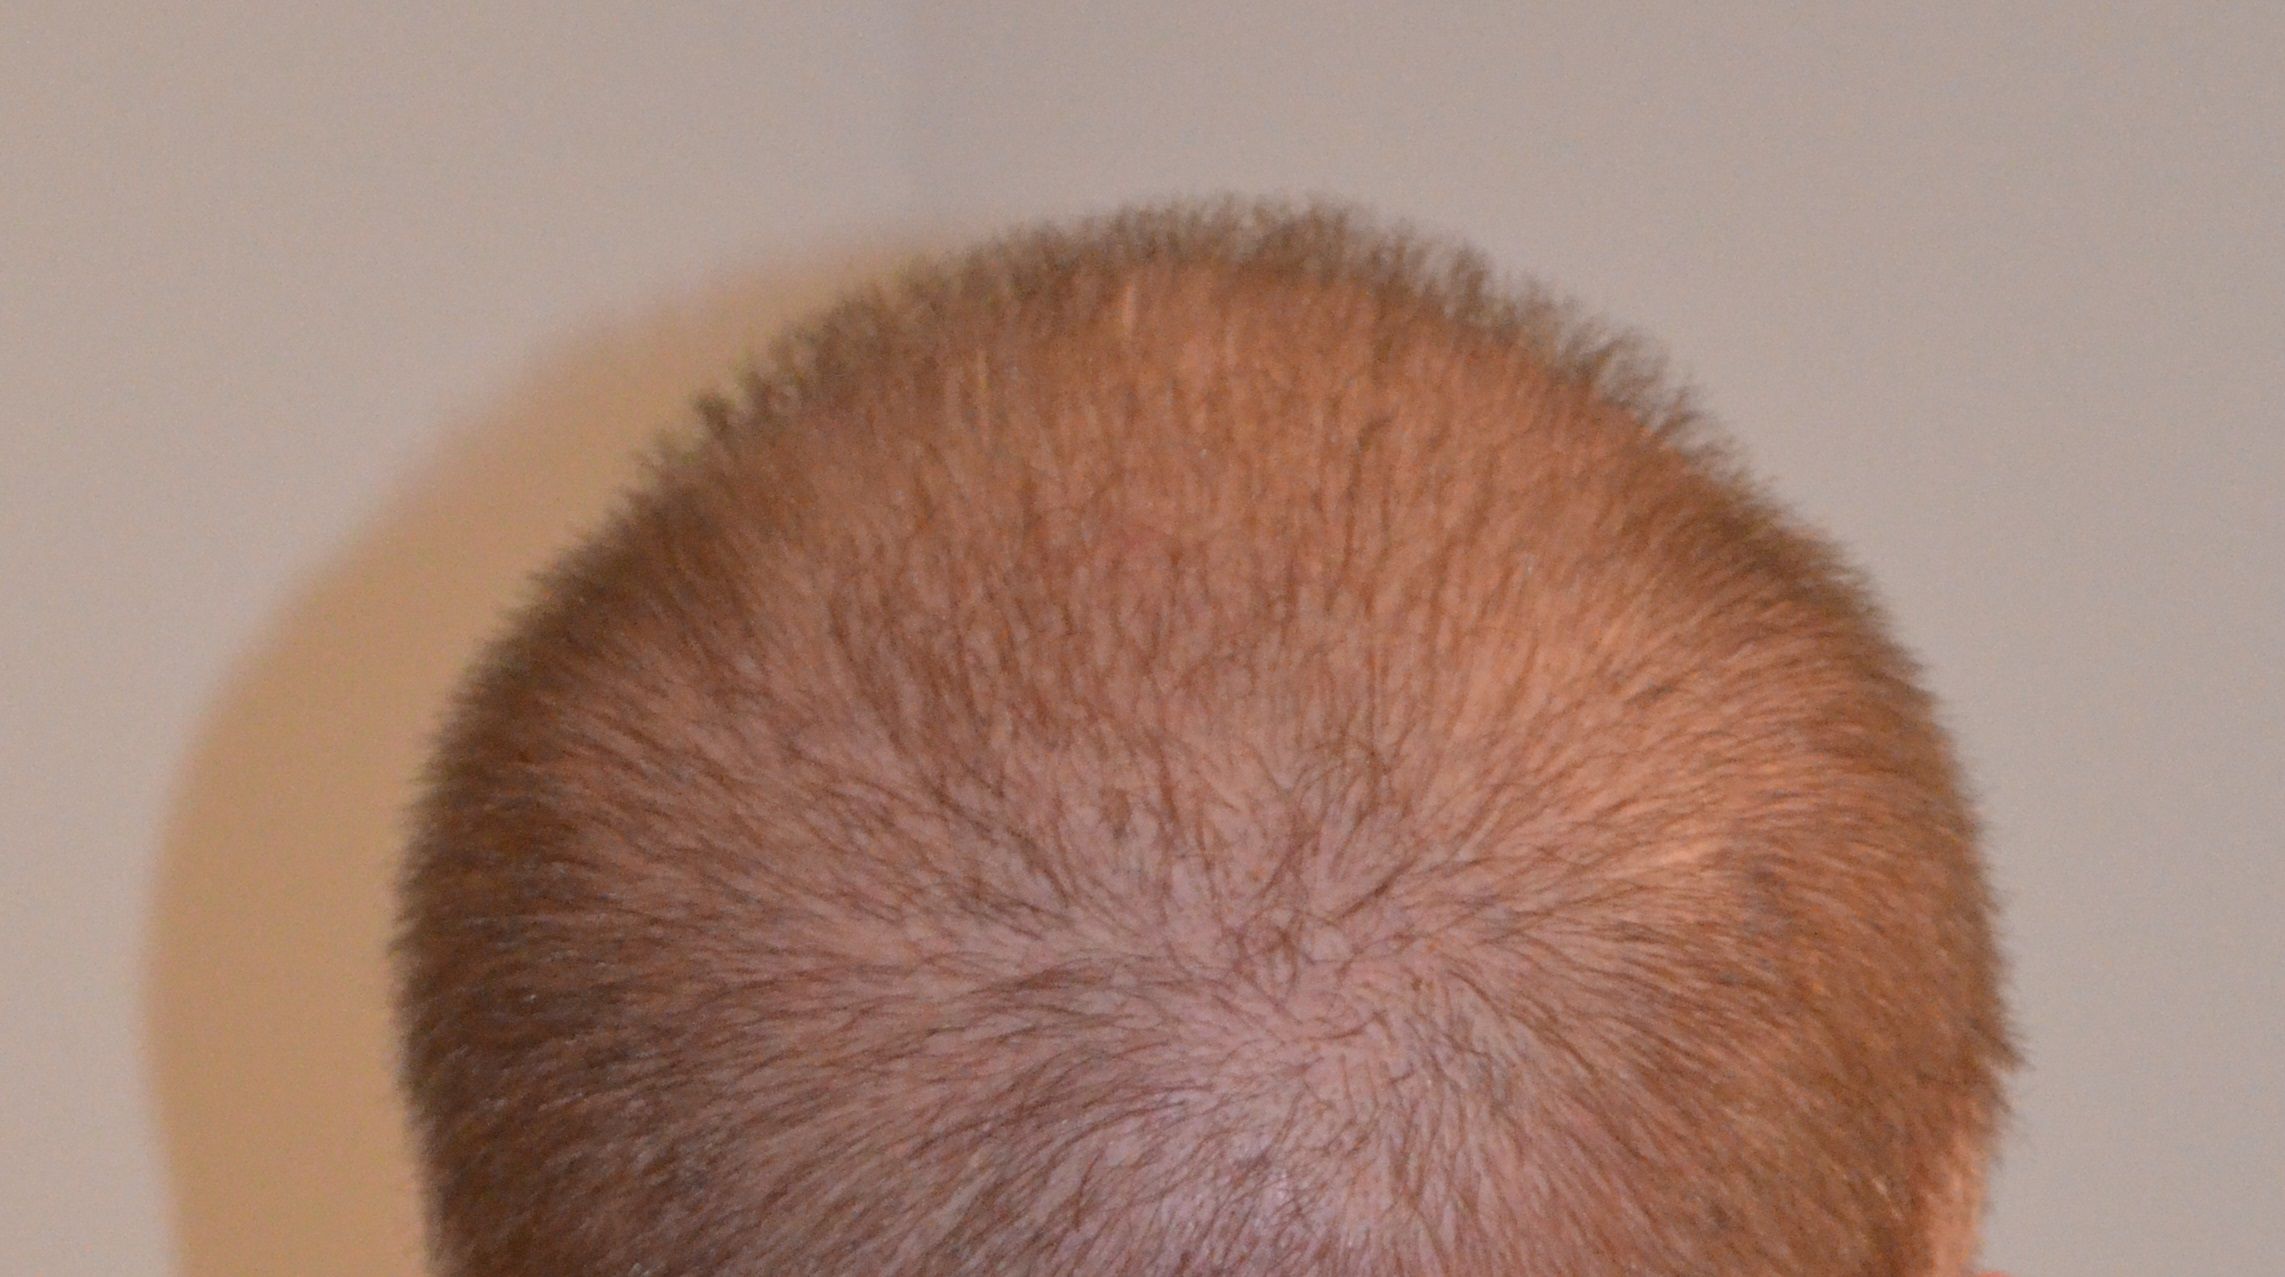 Trico-Pigmentierung gegeven Haarverlust